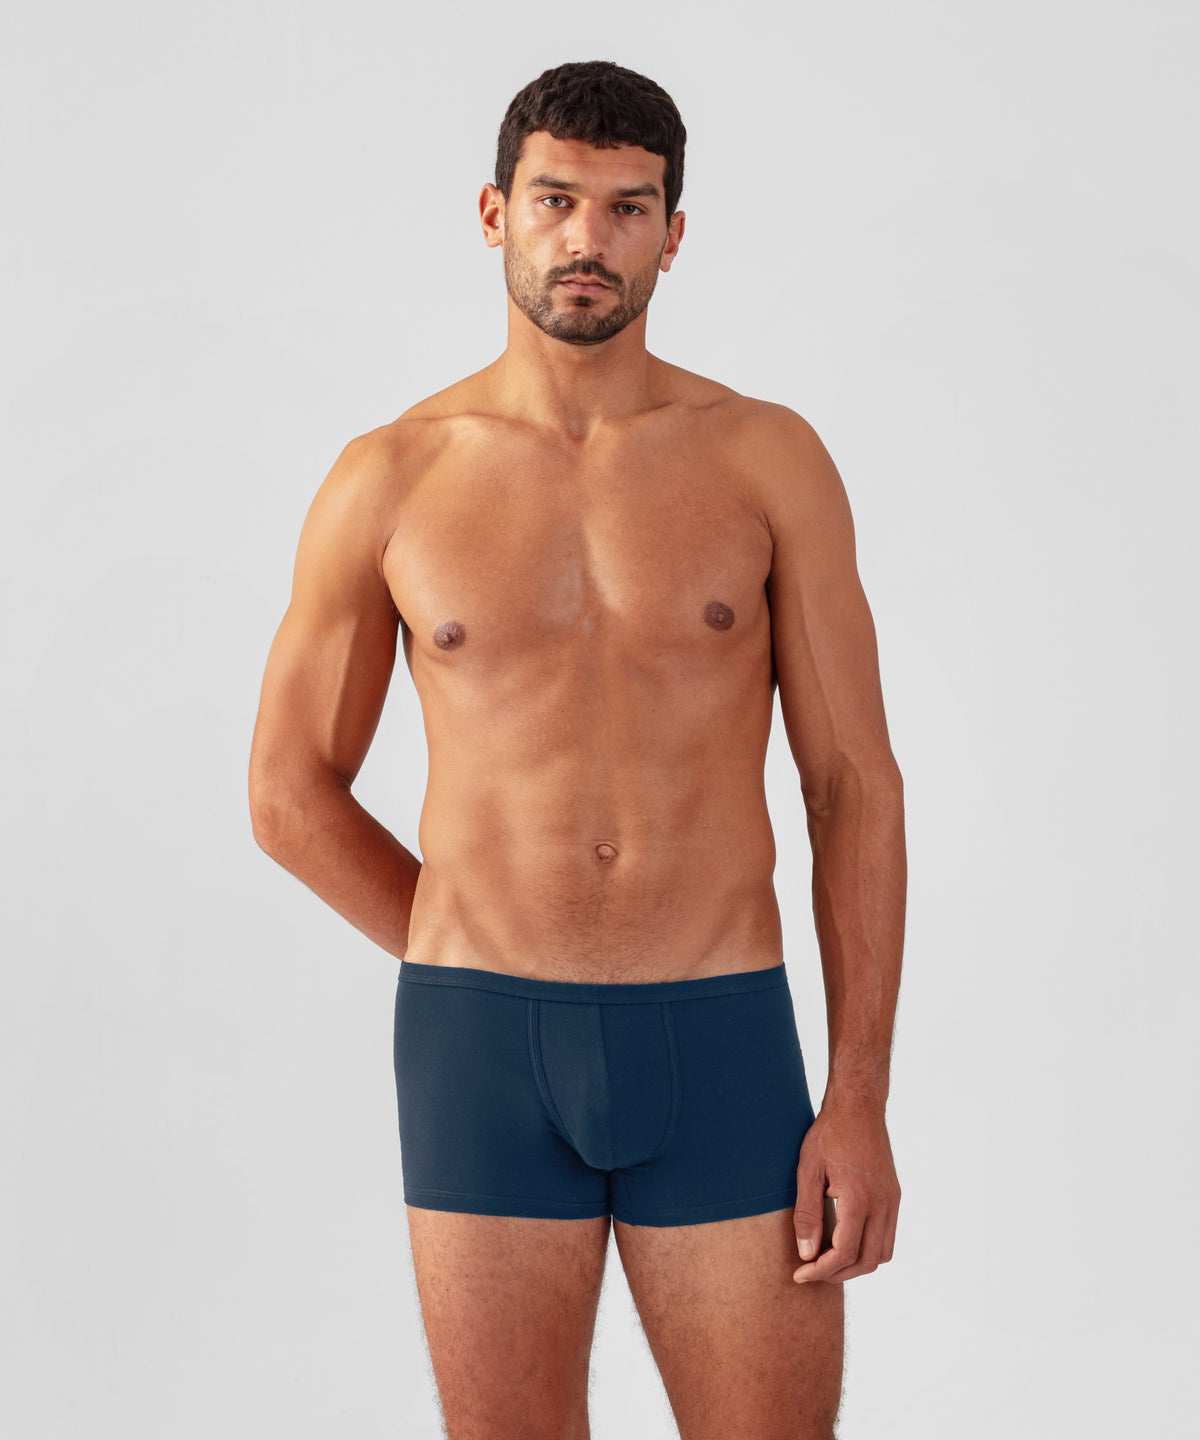 & online | Swimwear Underwear Sportswear, Ron Dorff Shop